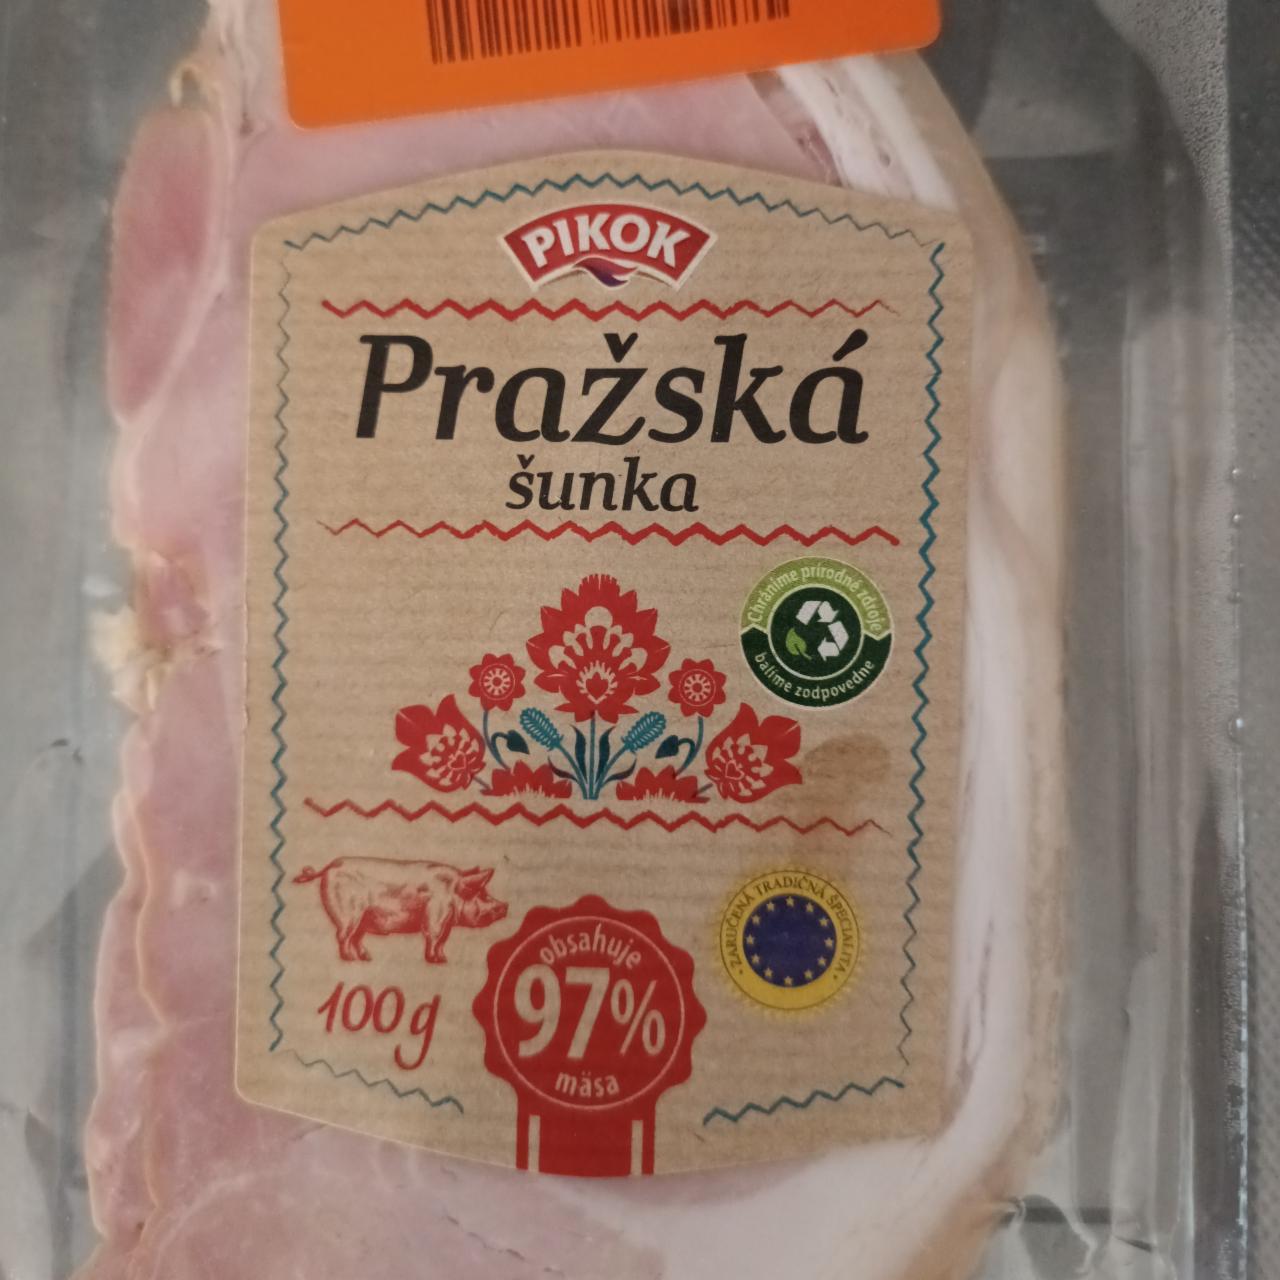 Fotografie - Pražská šunka 97% mäsa Pikok